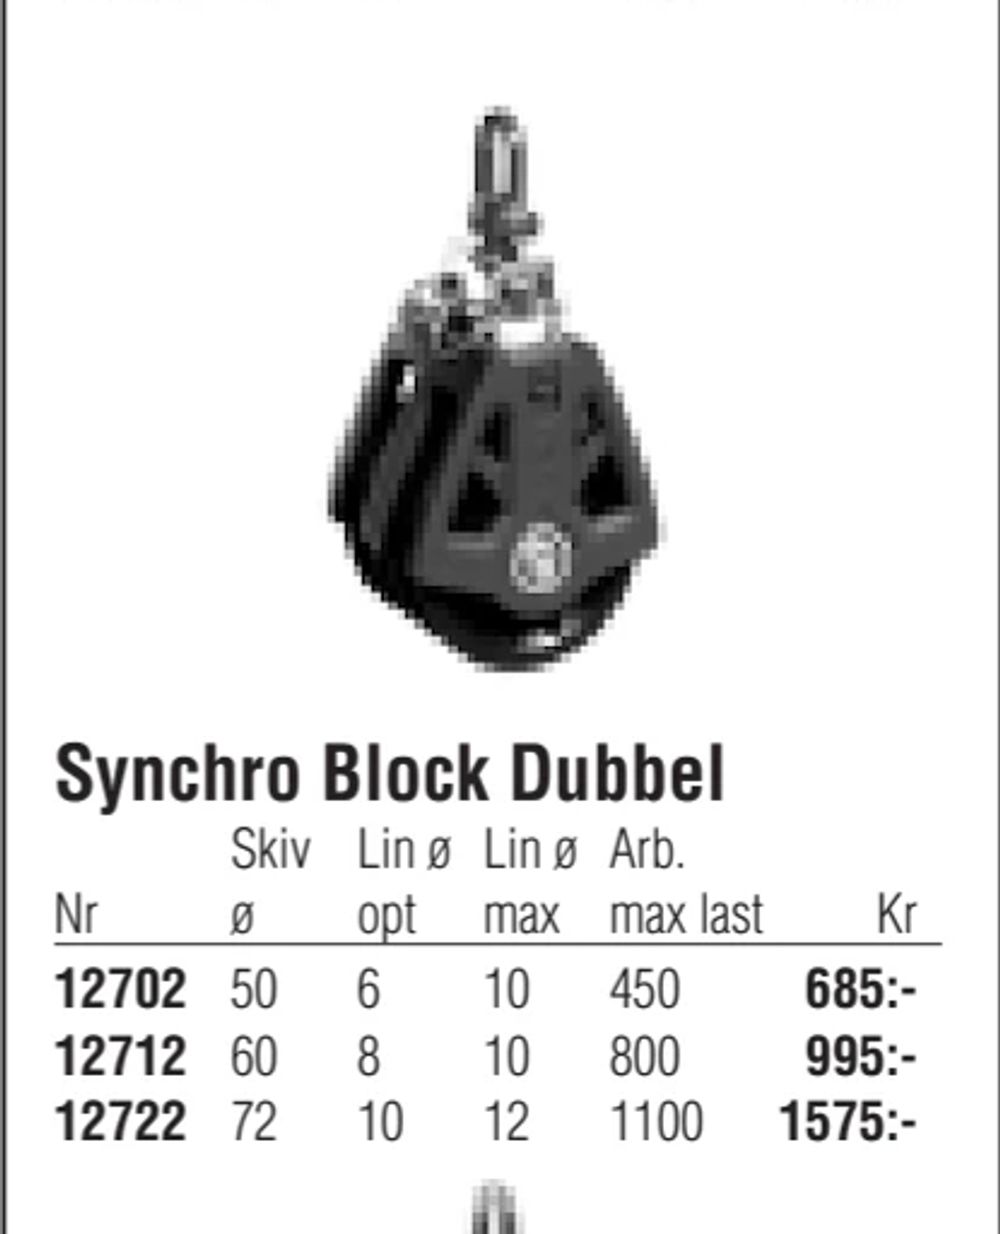 Erbjudanden på Synchro Block Dubbel från Erlandsons Brygga för 685 kr